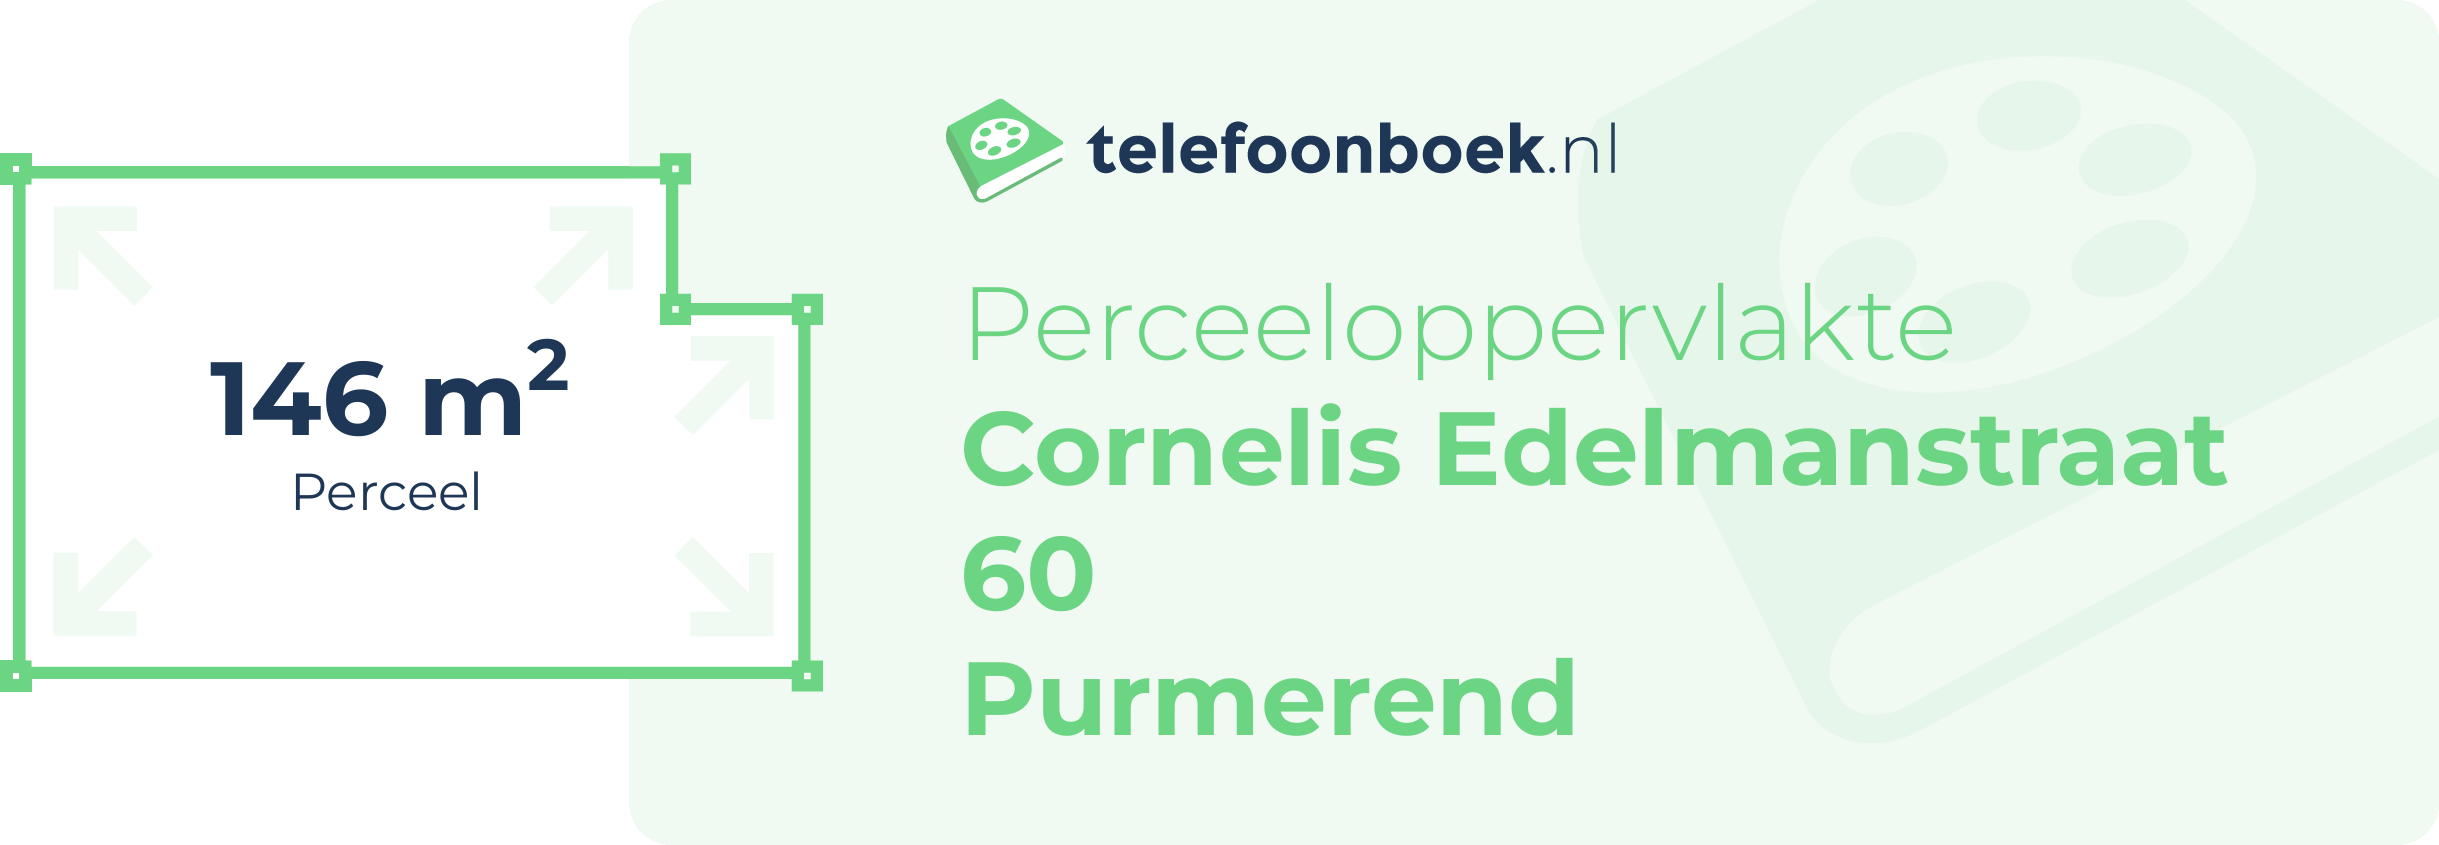 Perceeloppervlakte Cornelis Edelmanstraat 60 Purmerend